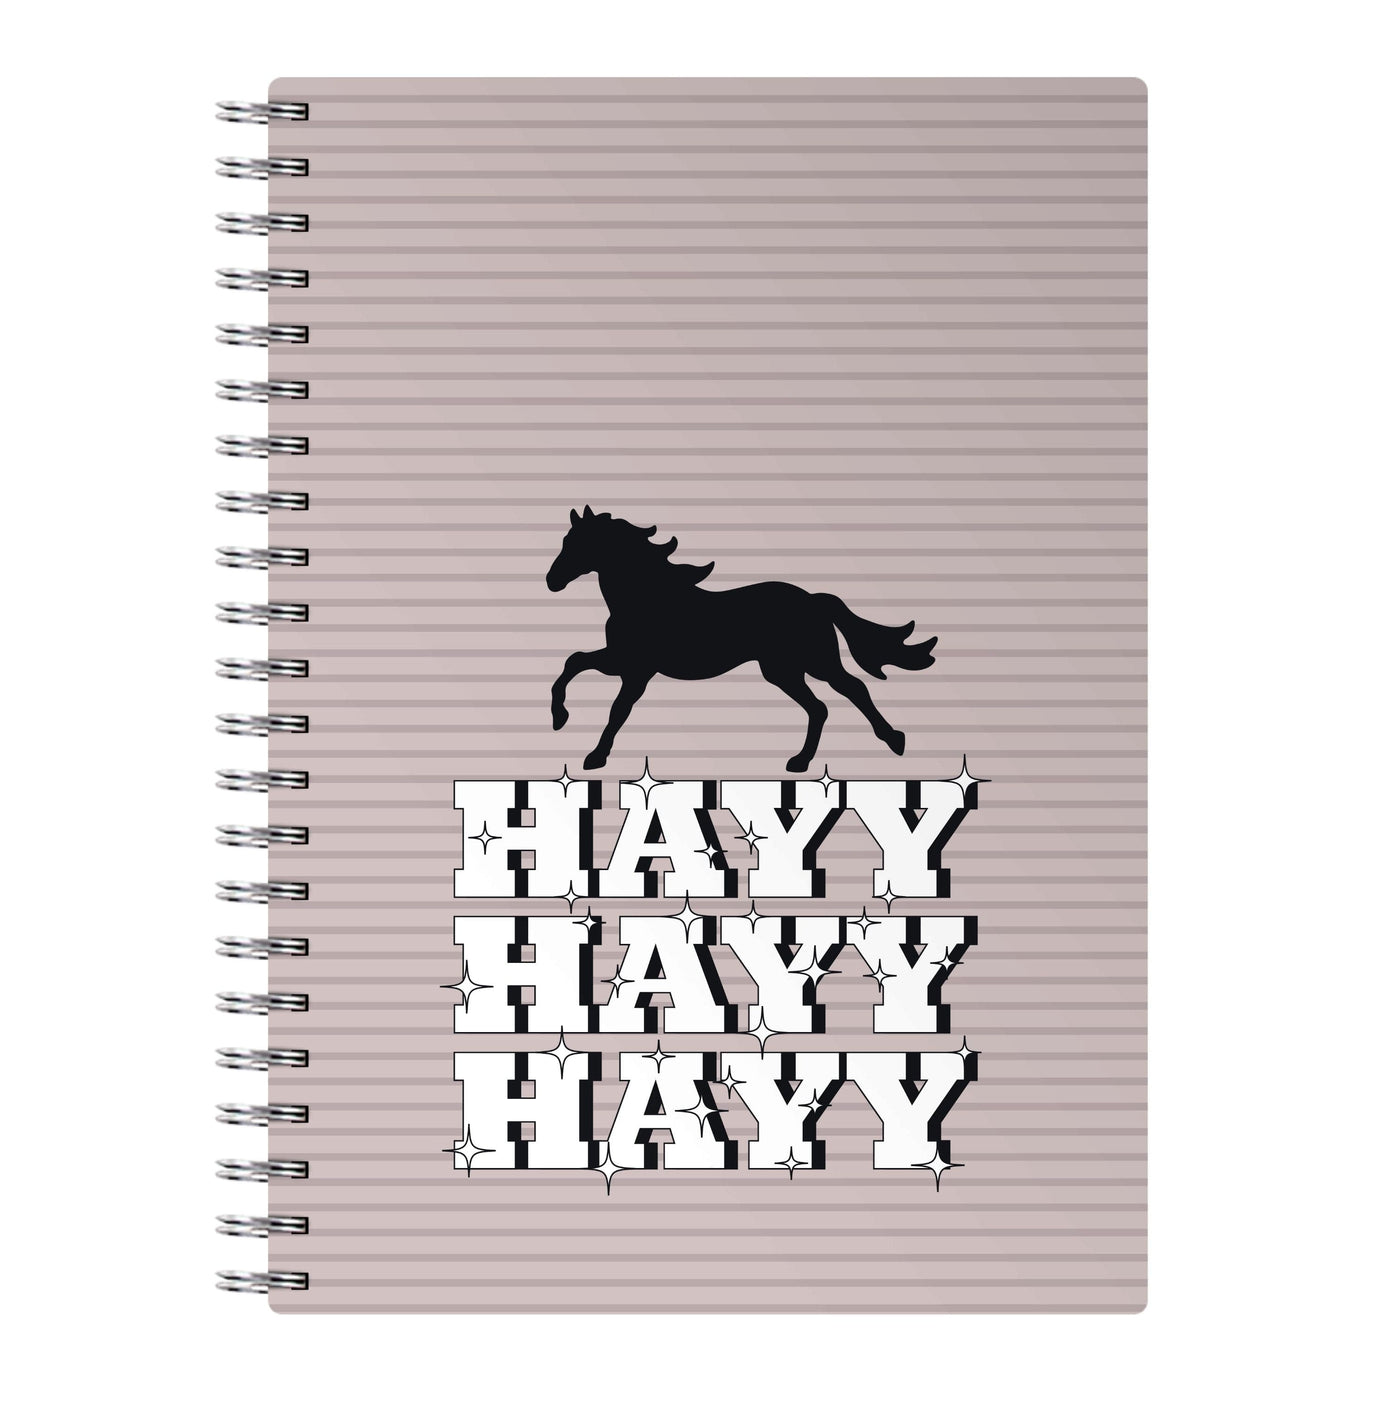 Hayy Hayy Hayy - Horses Notebook